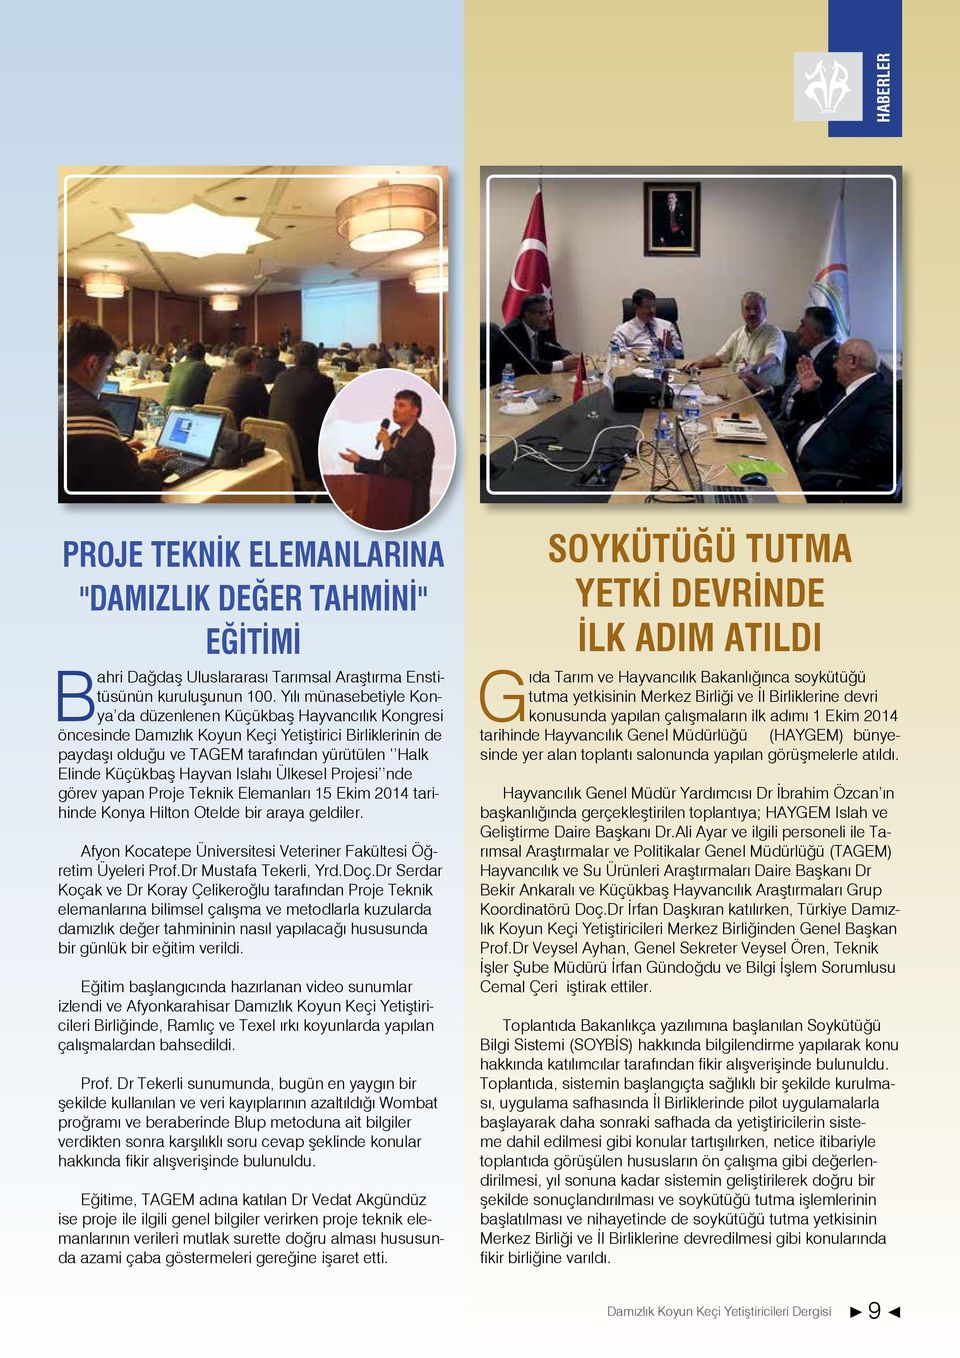 Hayvan Islahı Ülkesel Projesi nde görev yapan Proje Teknik Elemanları 15 Ekim 2014 tarihinde Konya Hilton Otelde bir araya geldiler.